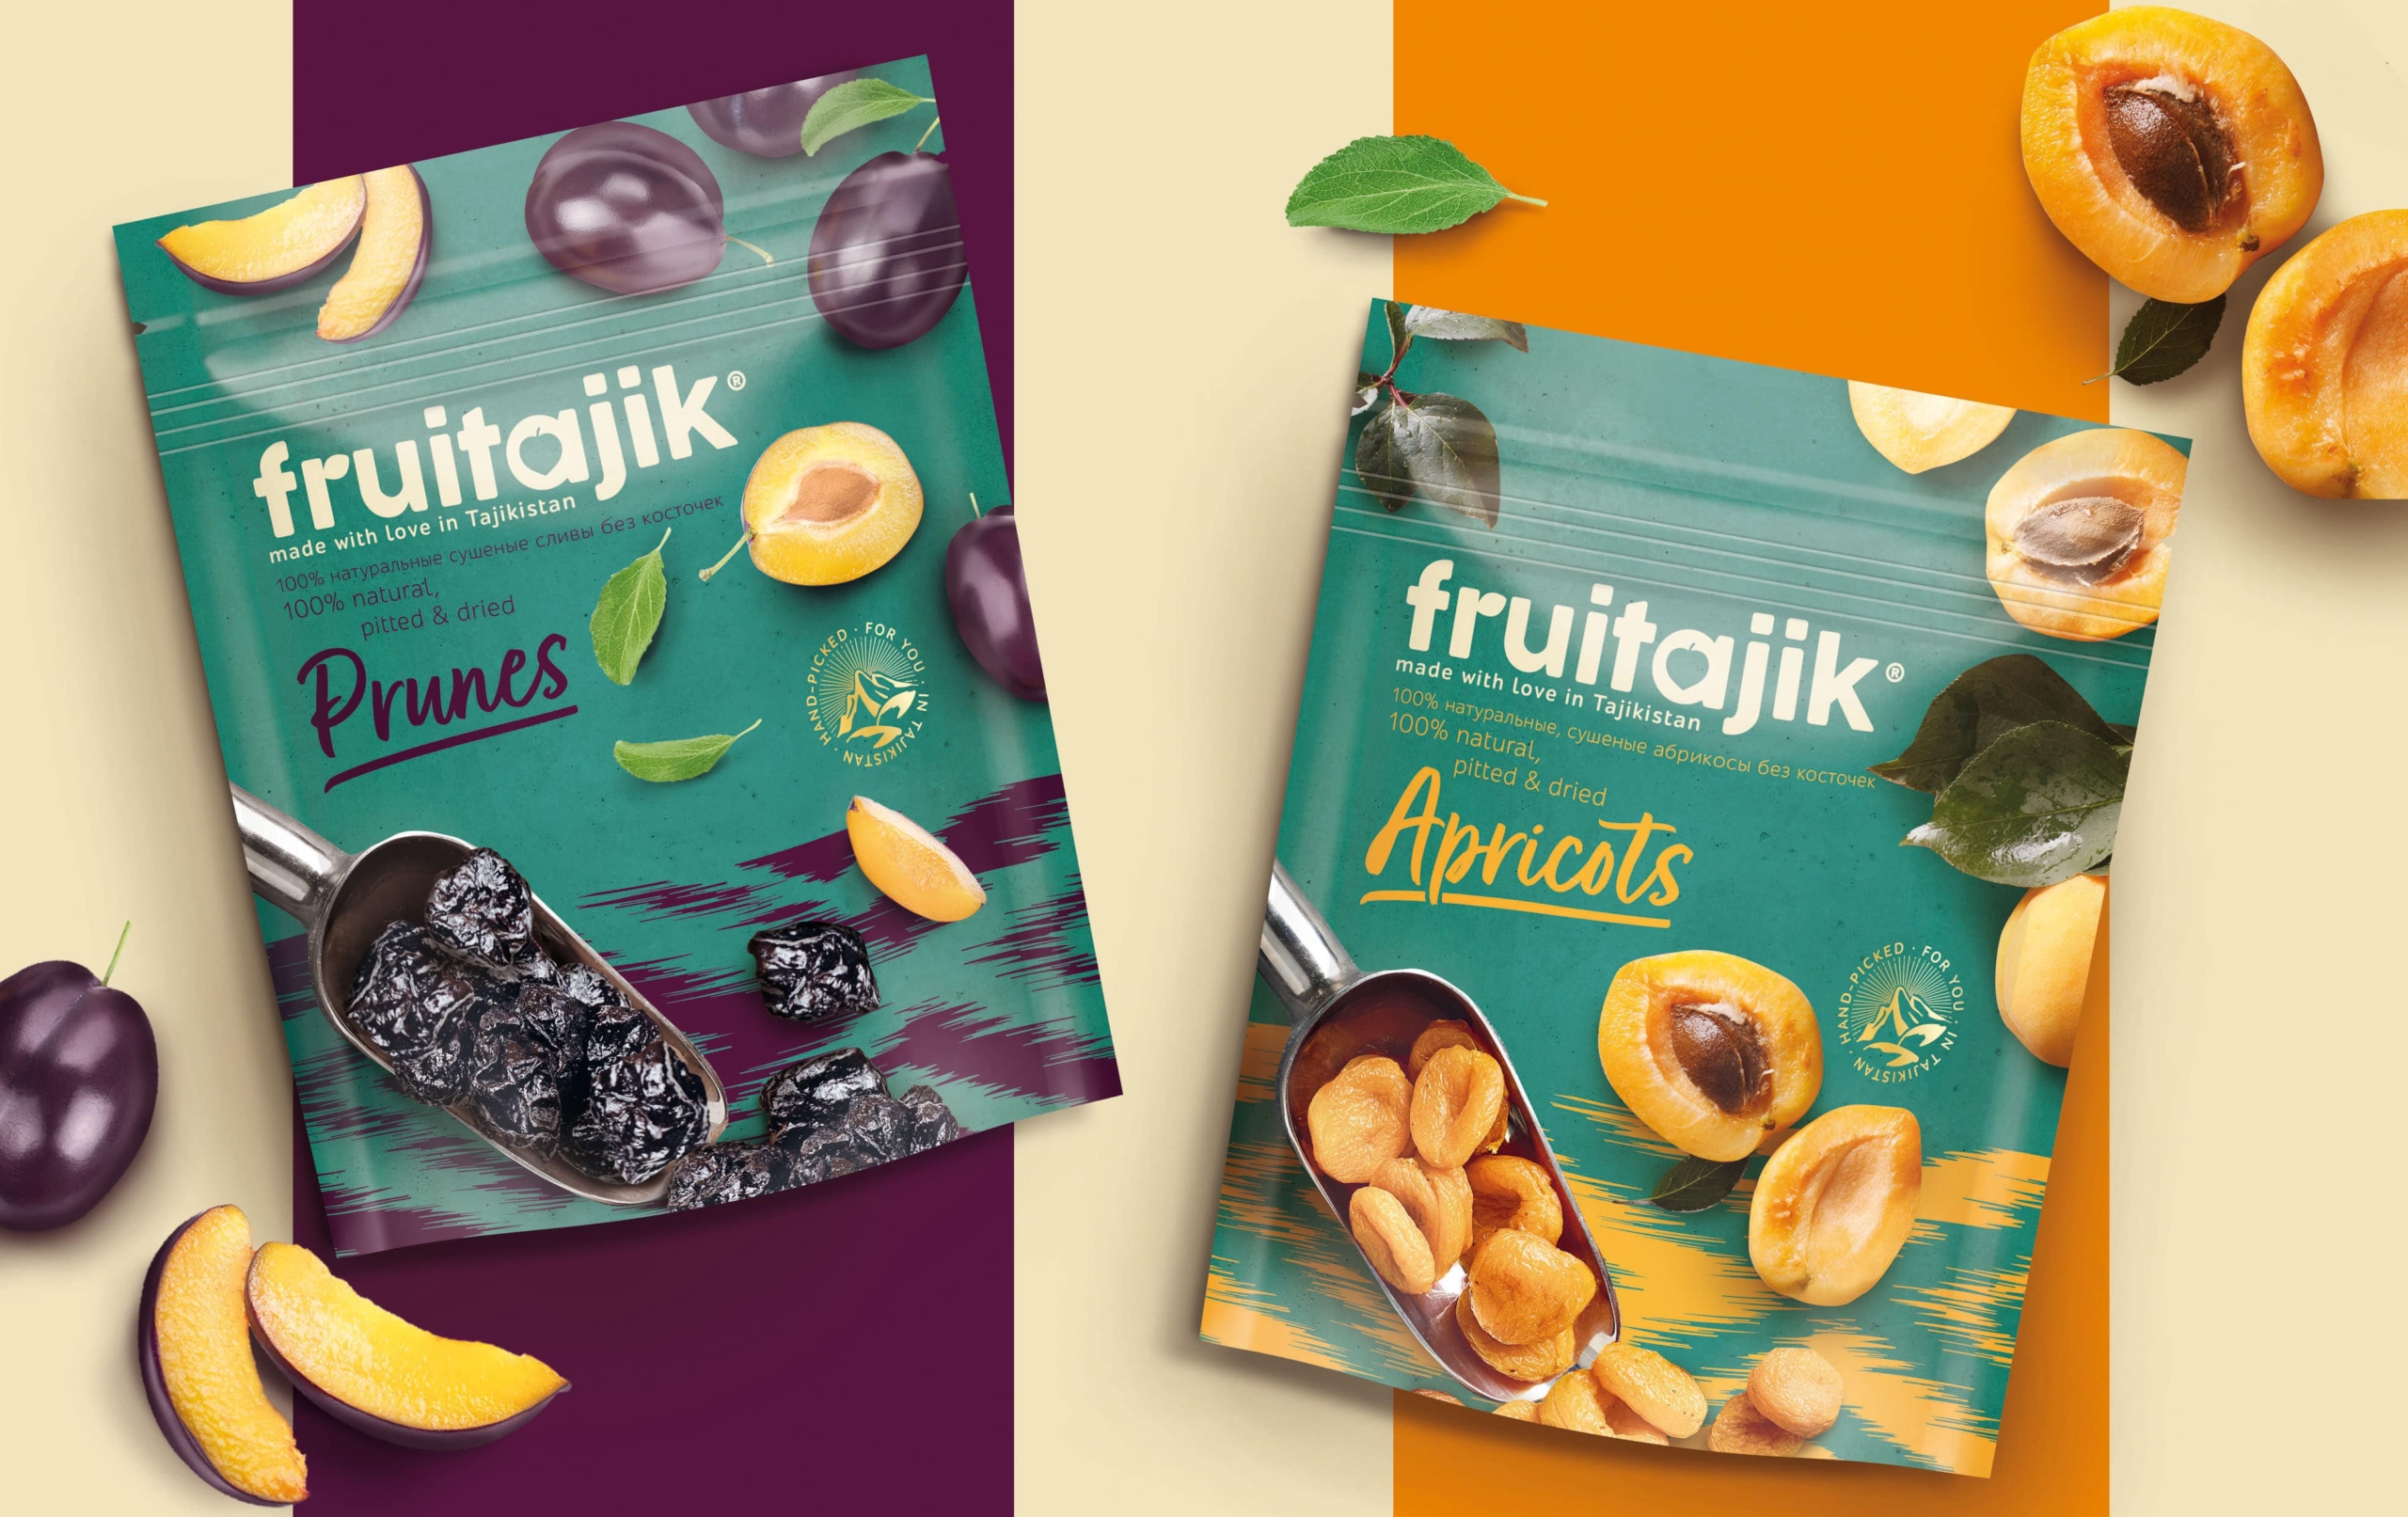 Visualisierung des Packaging designs für Beutel von Fruitajik getrocknete Aprikosen und Pflaumen